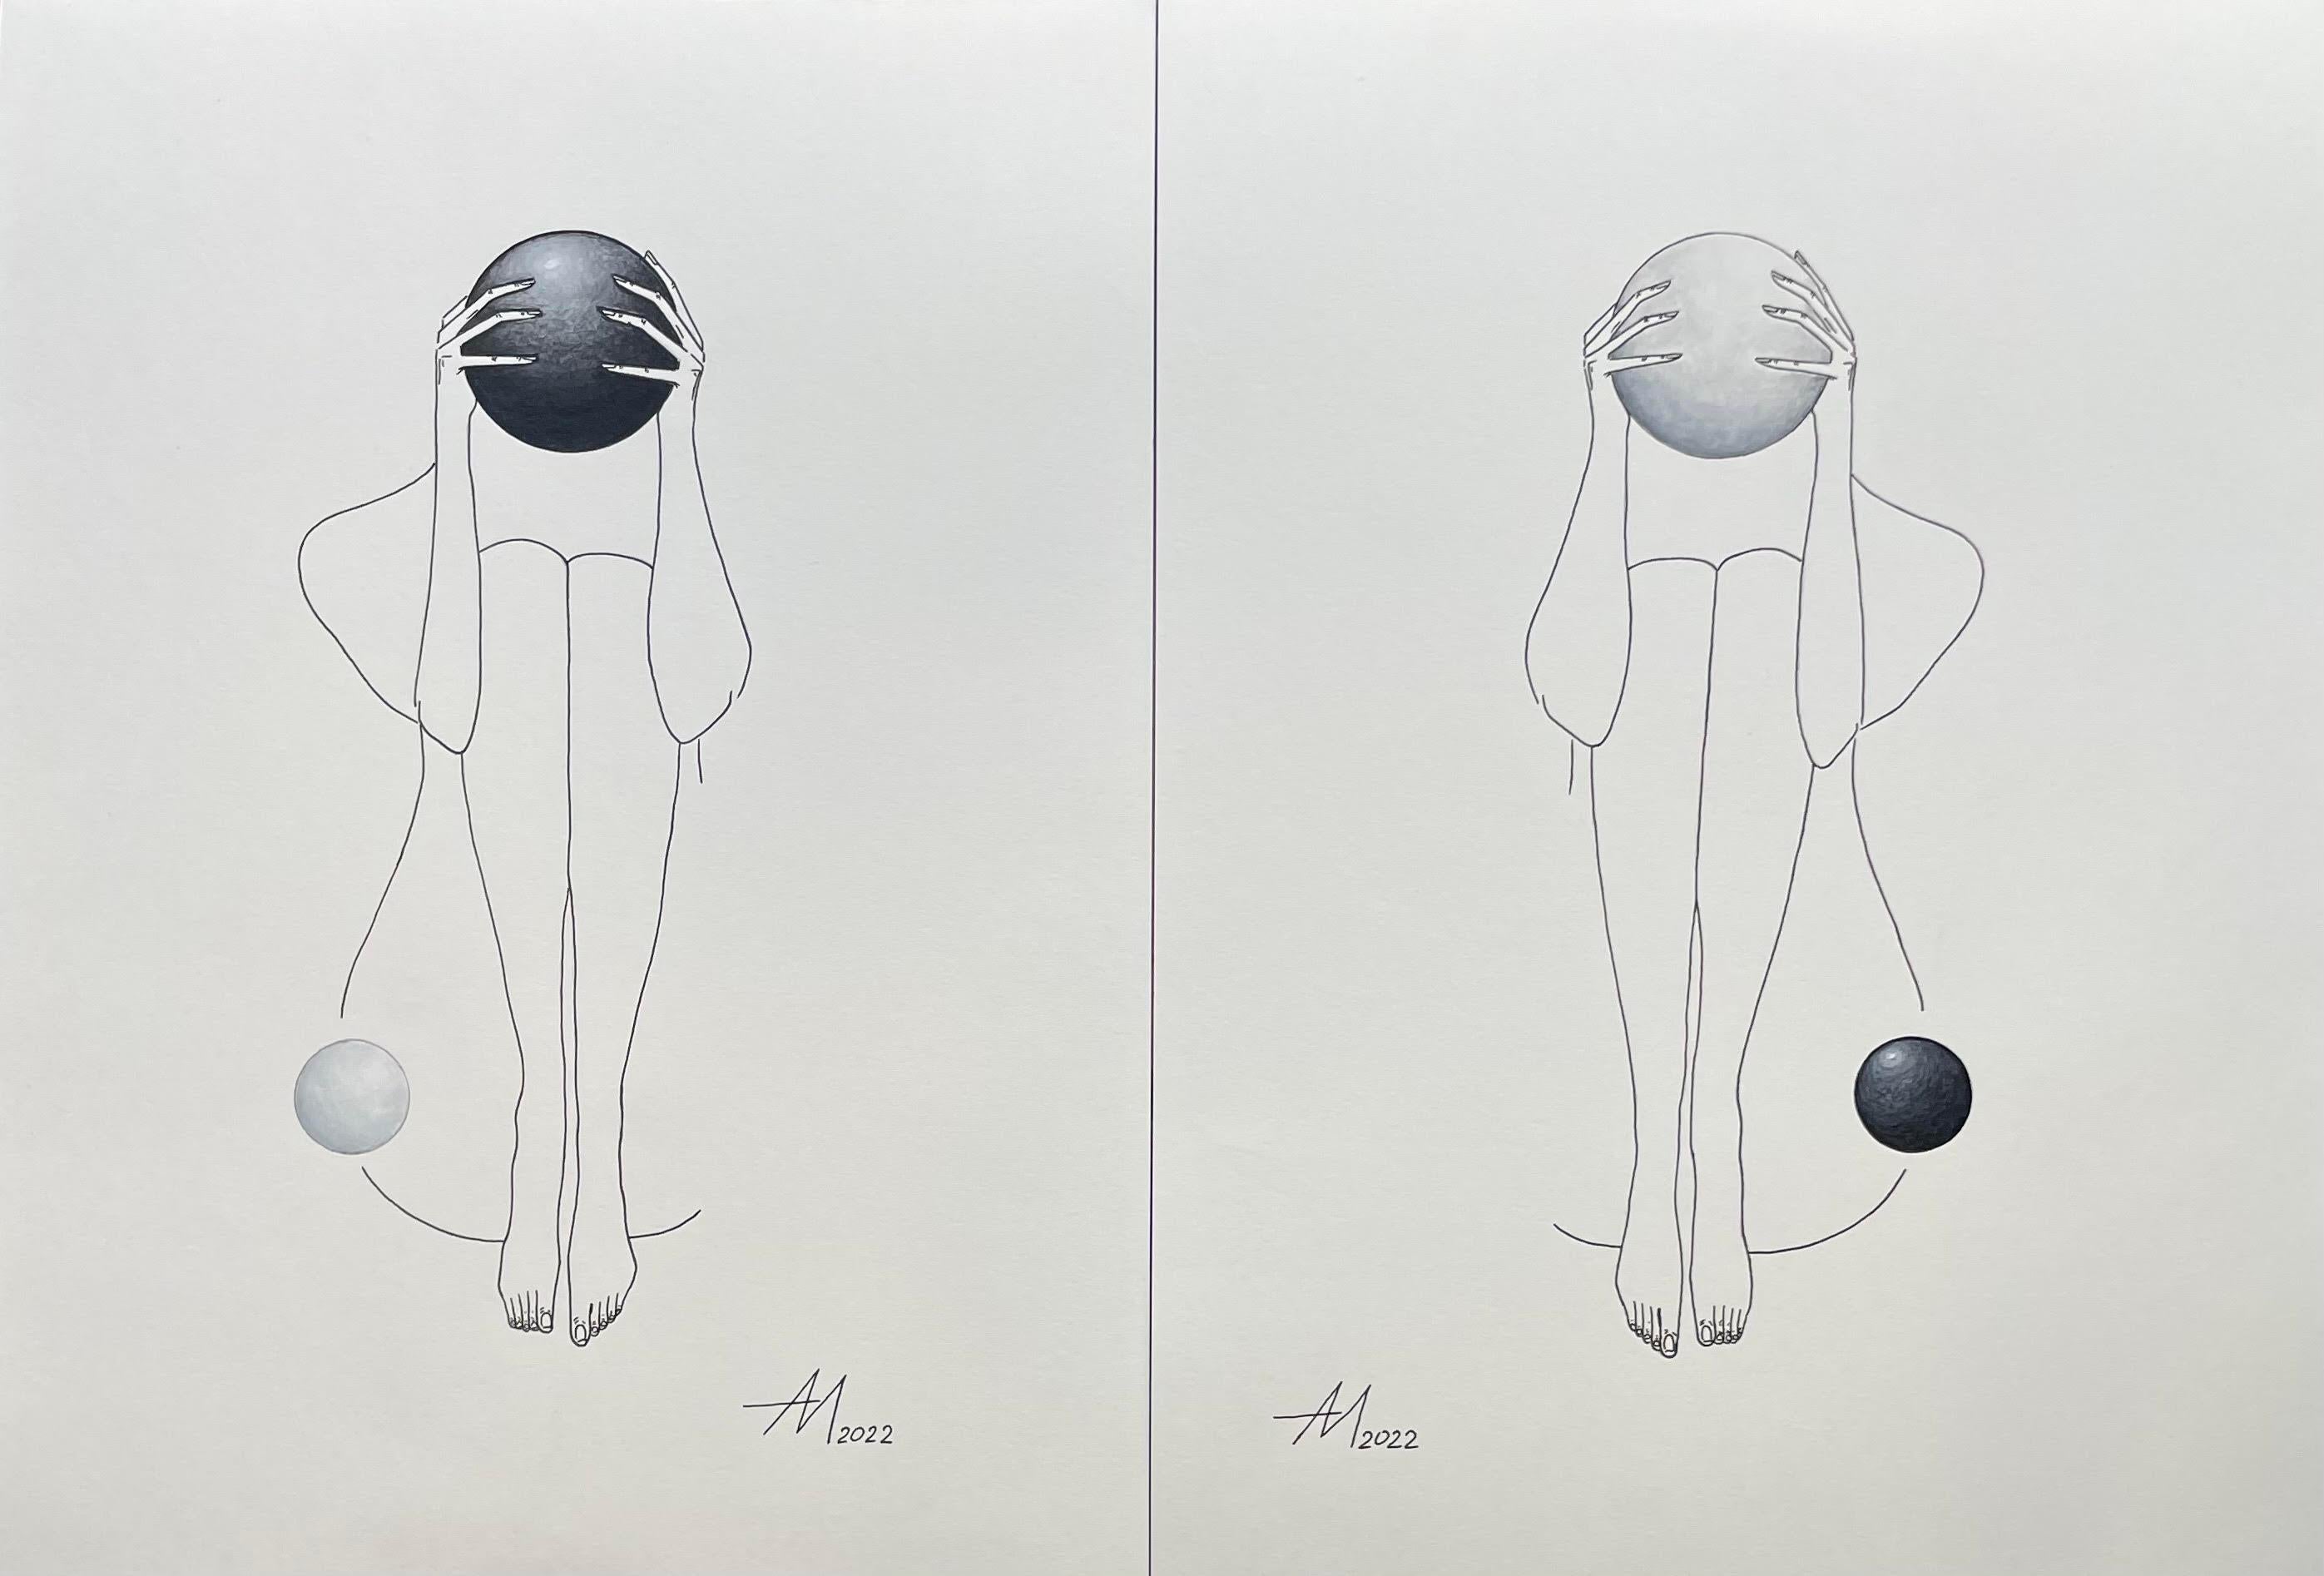 Yin und Yang Planeten - Linienzeichnende Frauenfigur mit schwarzem und weißem Kreis